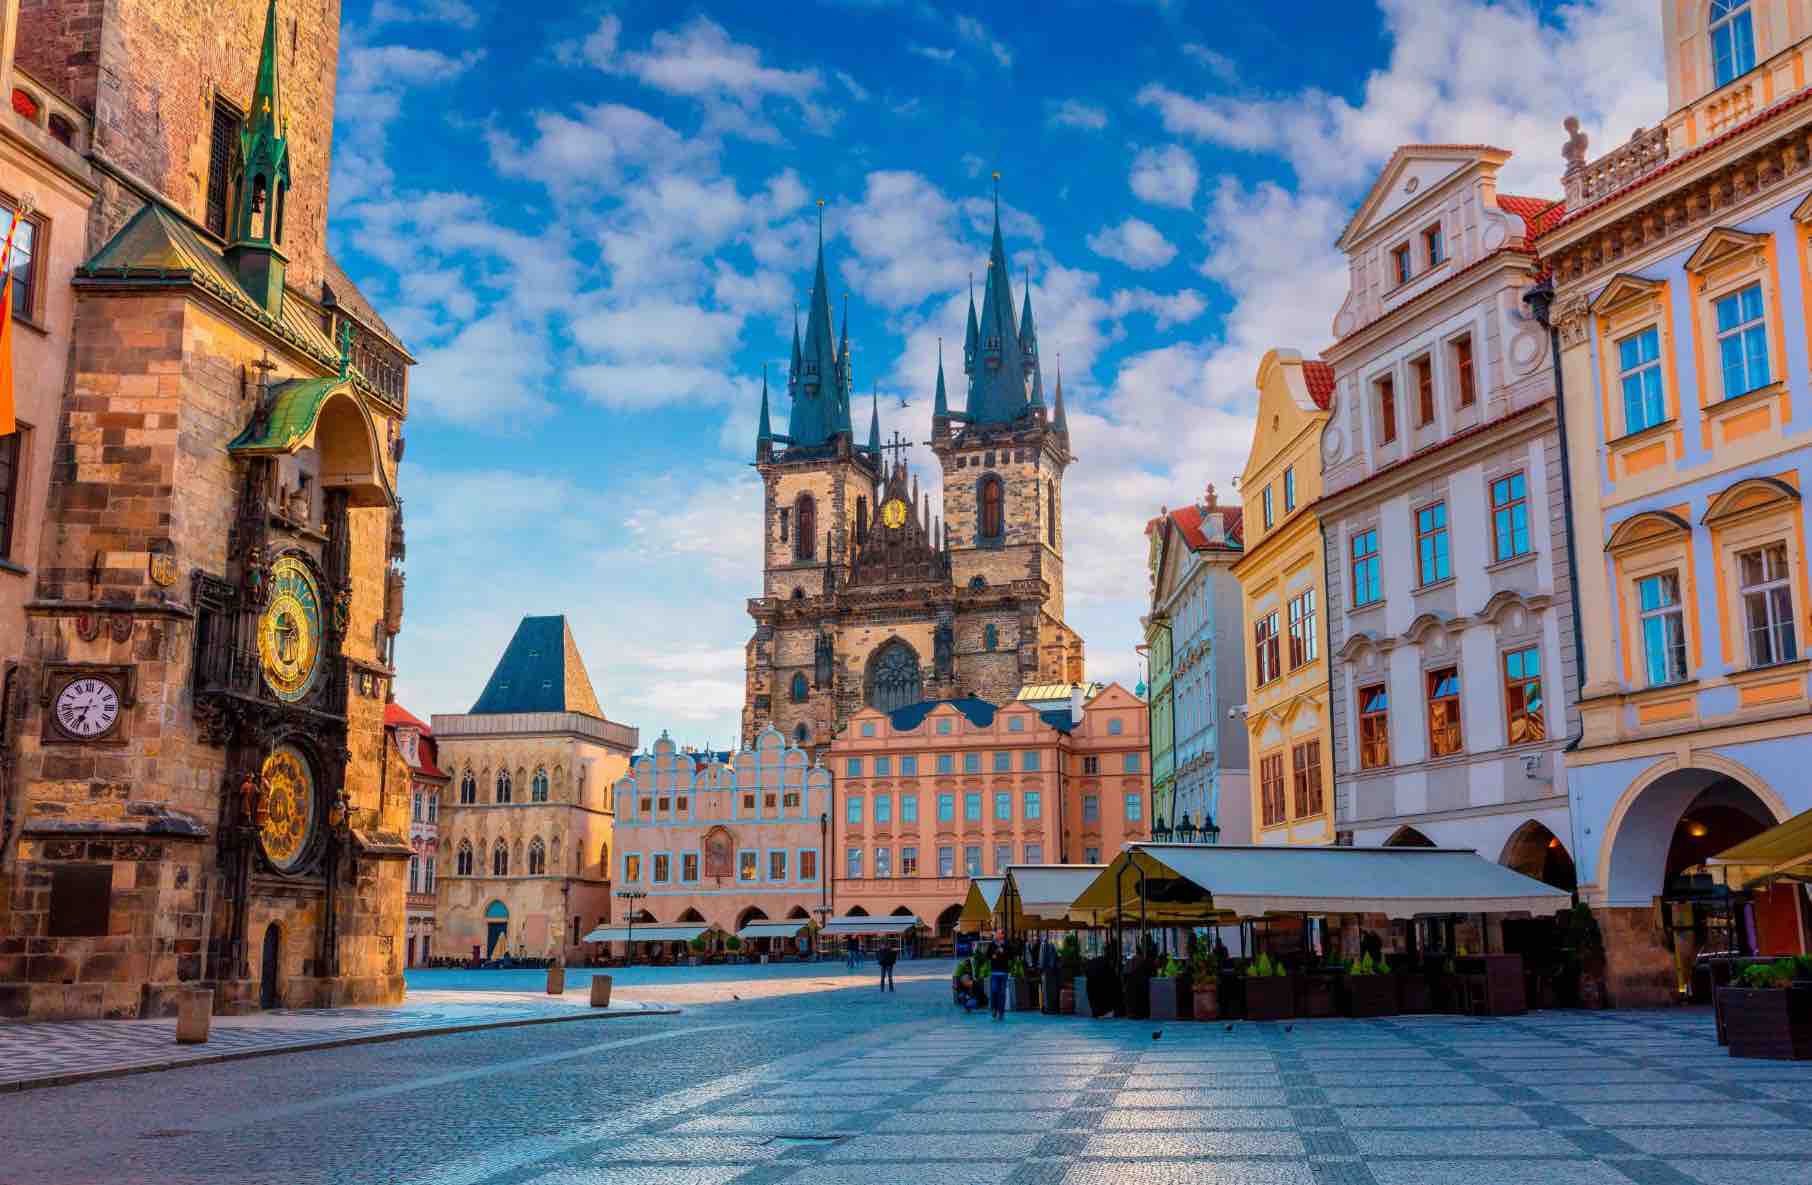 Освіта в університетах Чехії також ведеться відповідно до принципів Болонської освітньої системи. Джерело фото: Shutterstock.